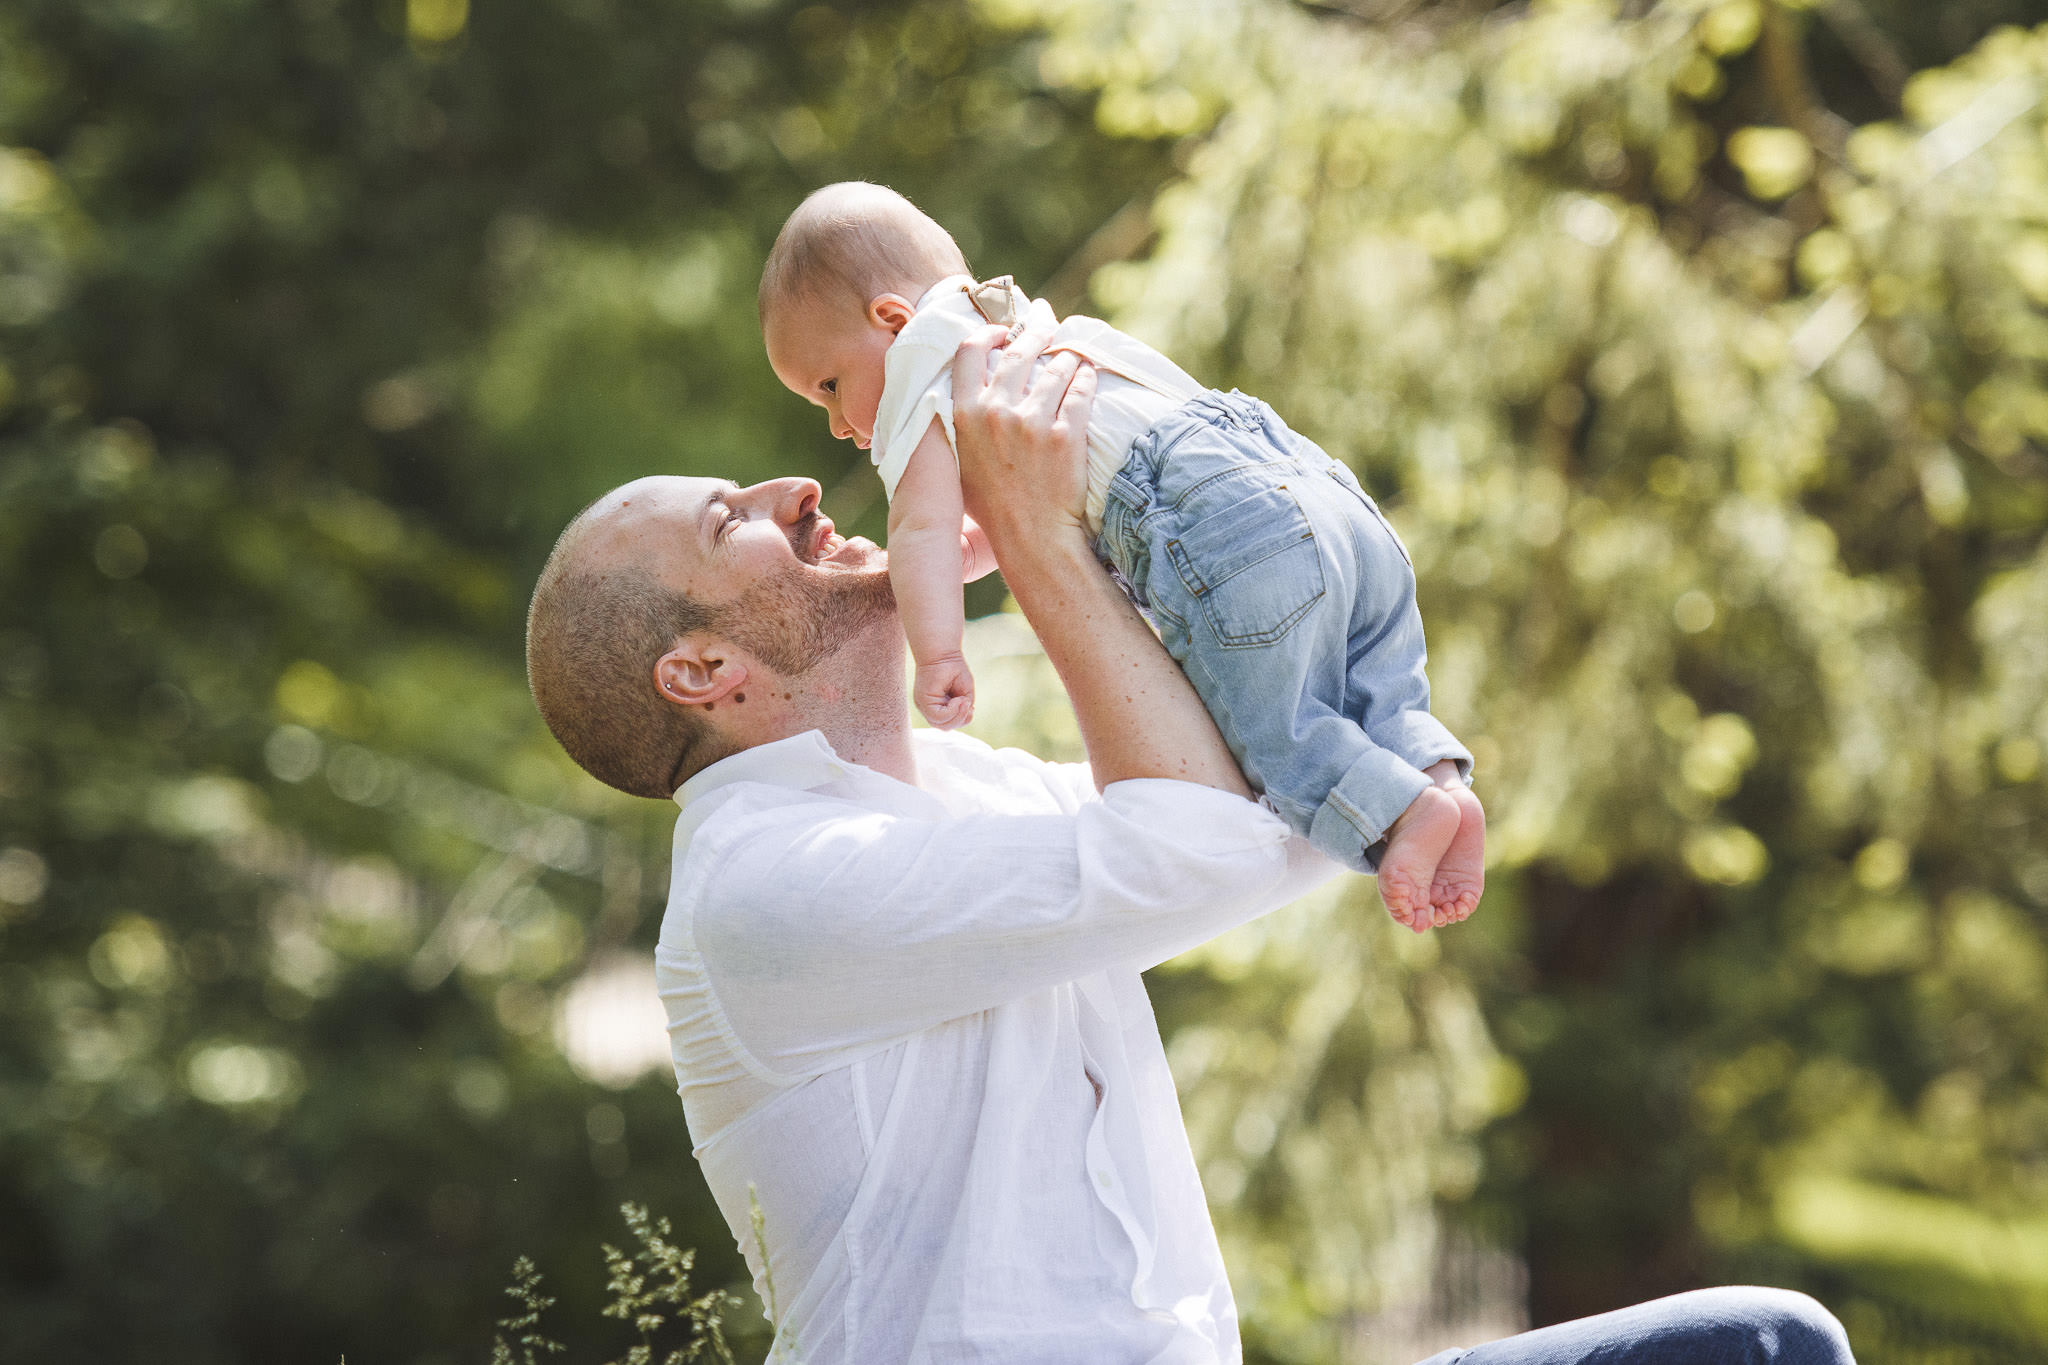 Family Photos at High Park | Outdoor Father and Son Photos | Eneira Photography